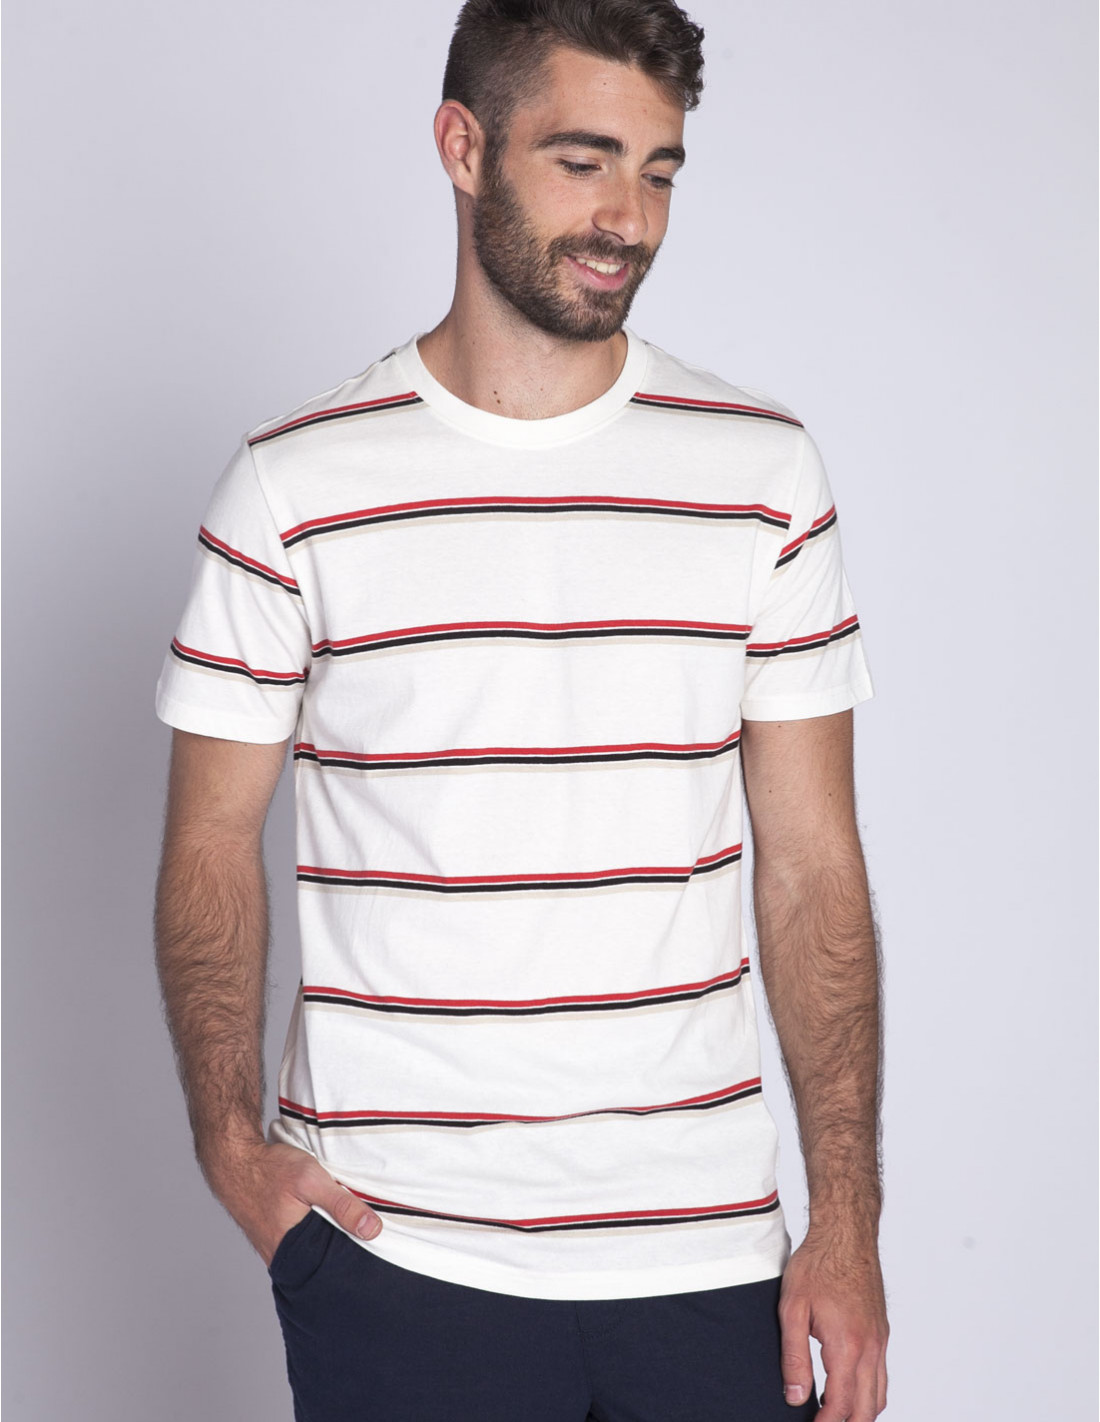 Comprar Camiseta de Rayas Roja y Blanca - Chaquetas y Camisetas